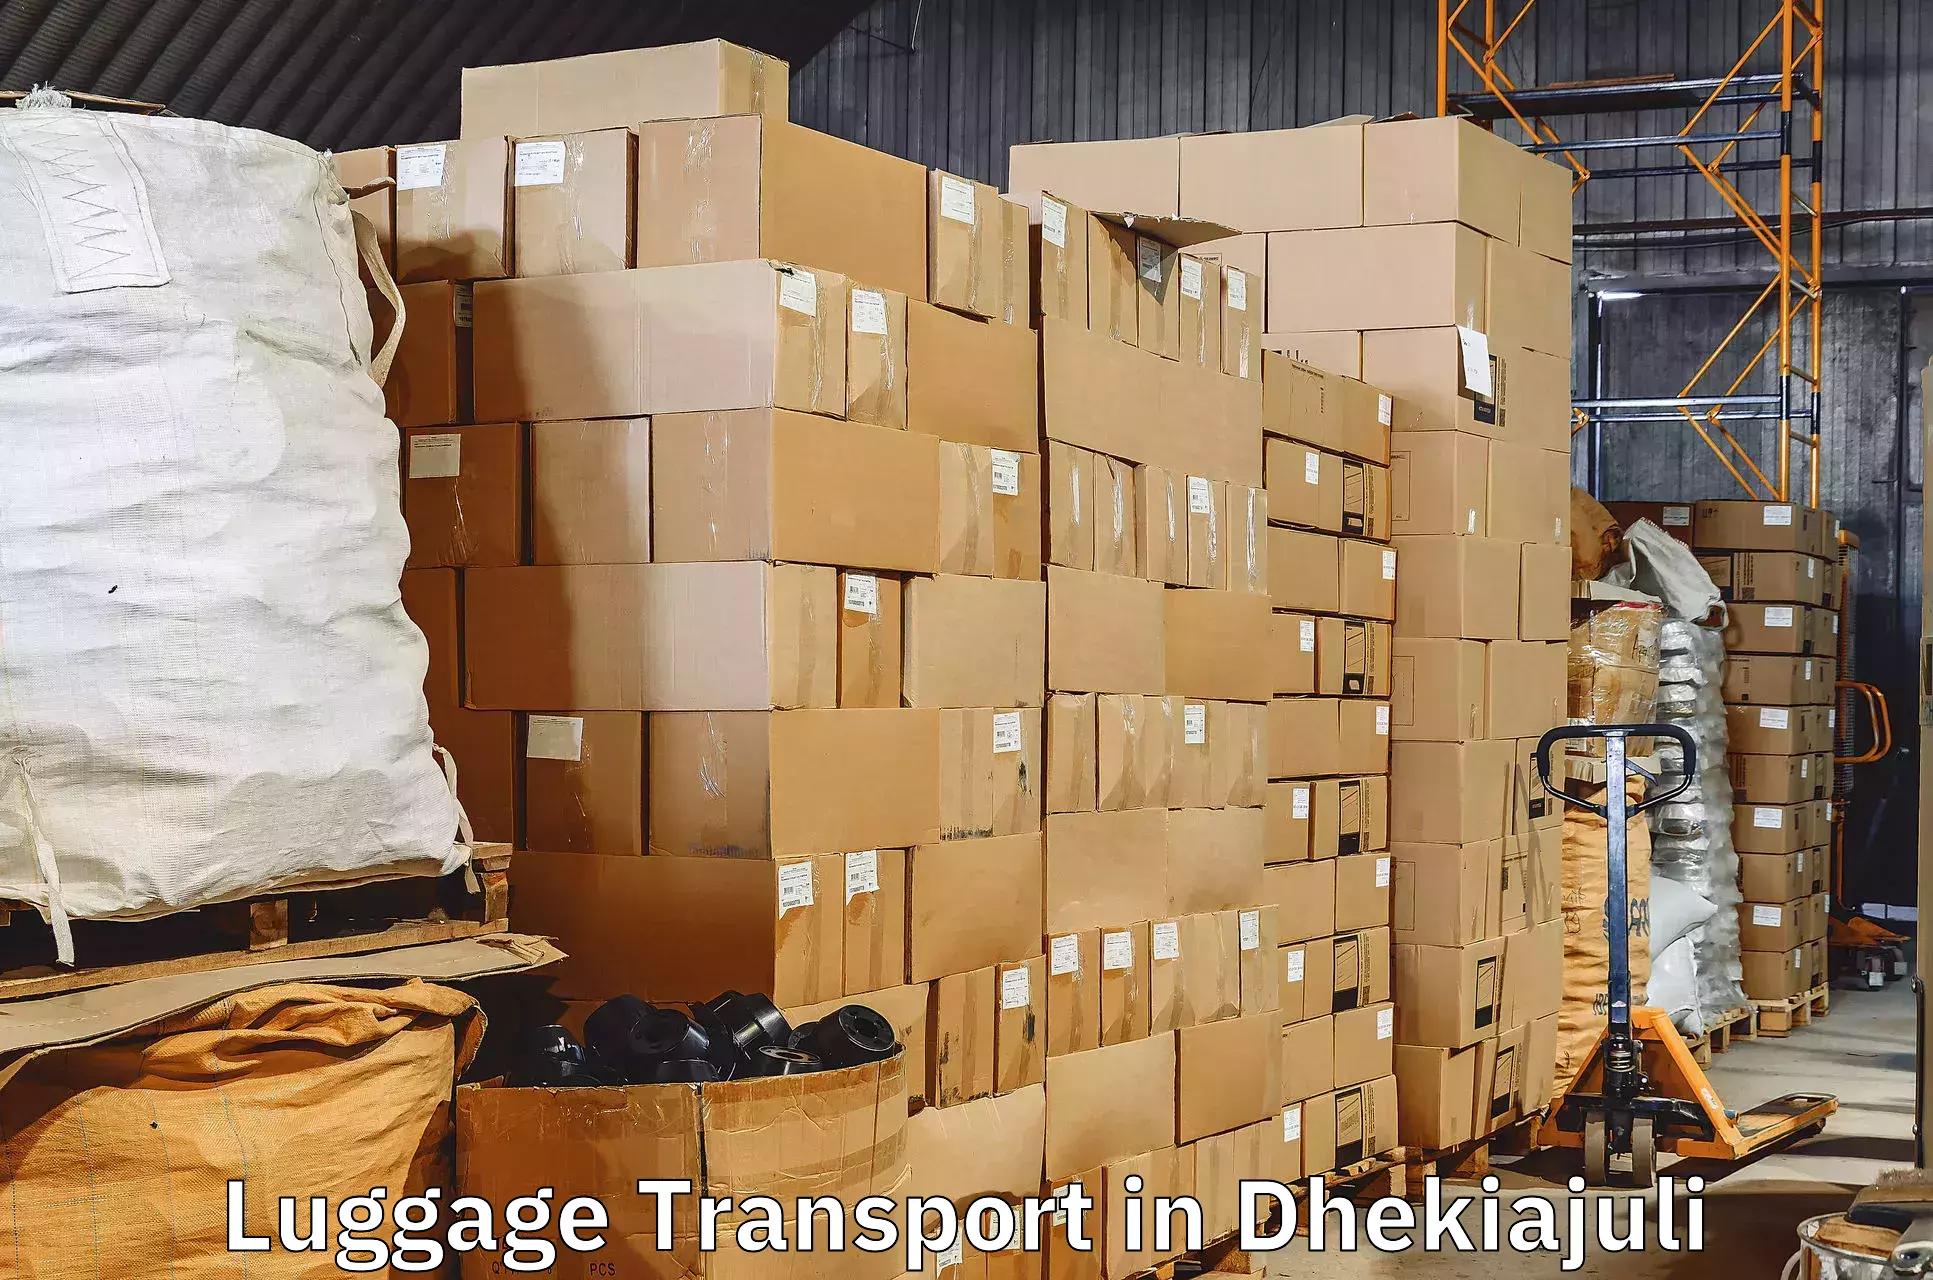 Automated luggage transport in Dhekiajuli